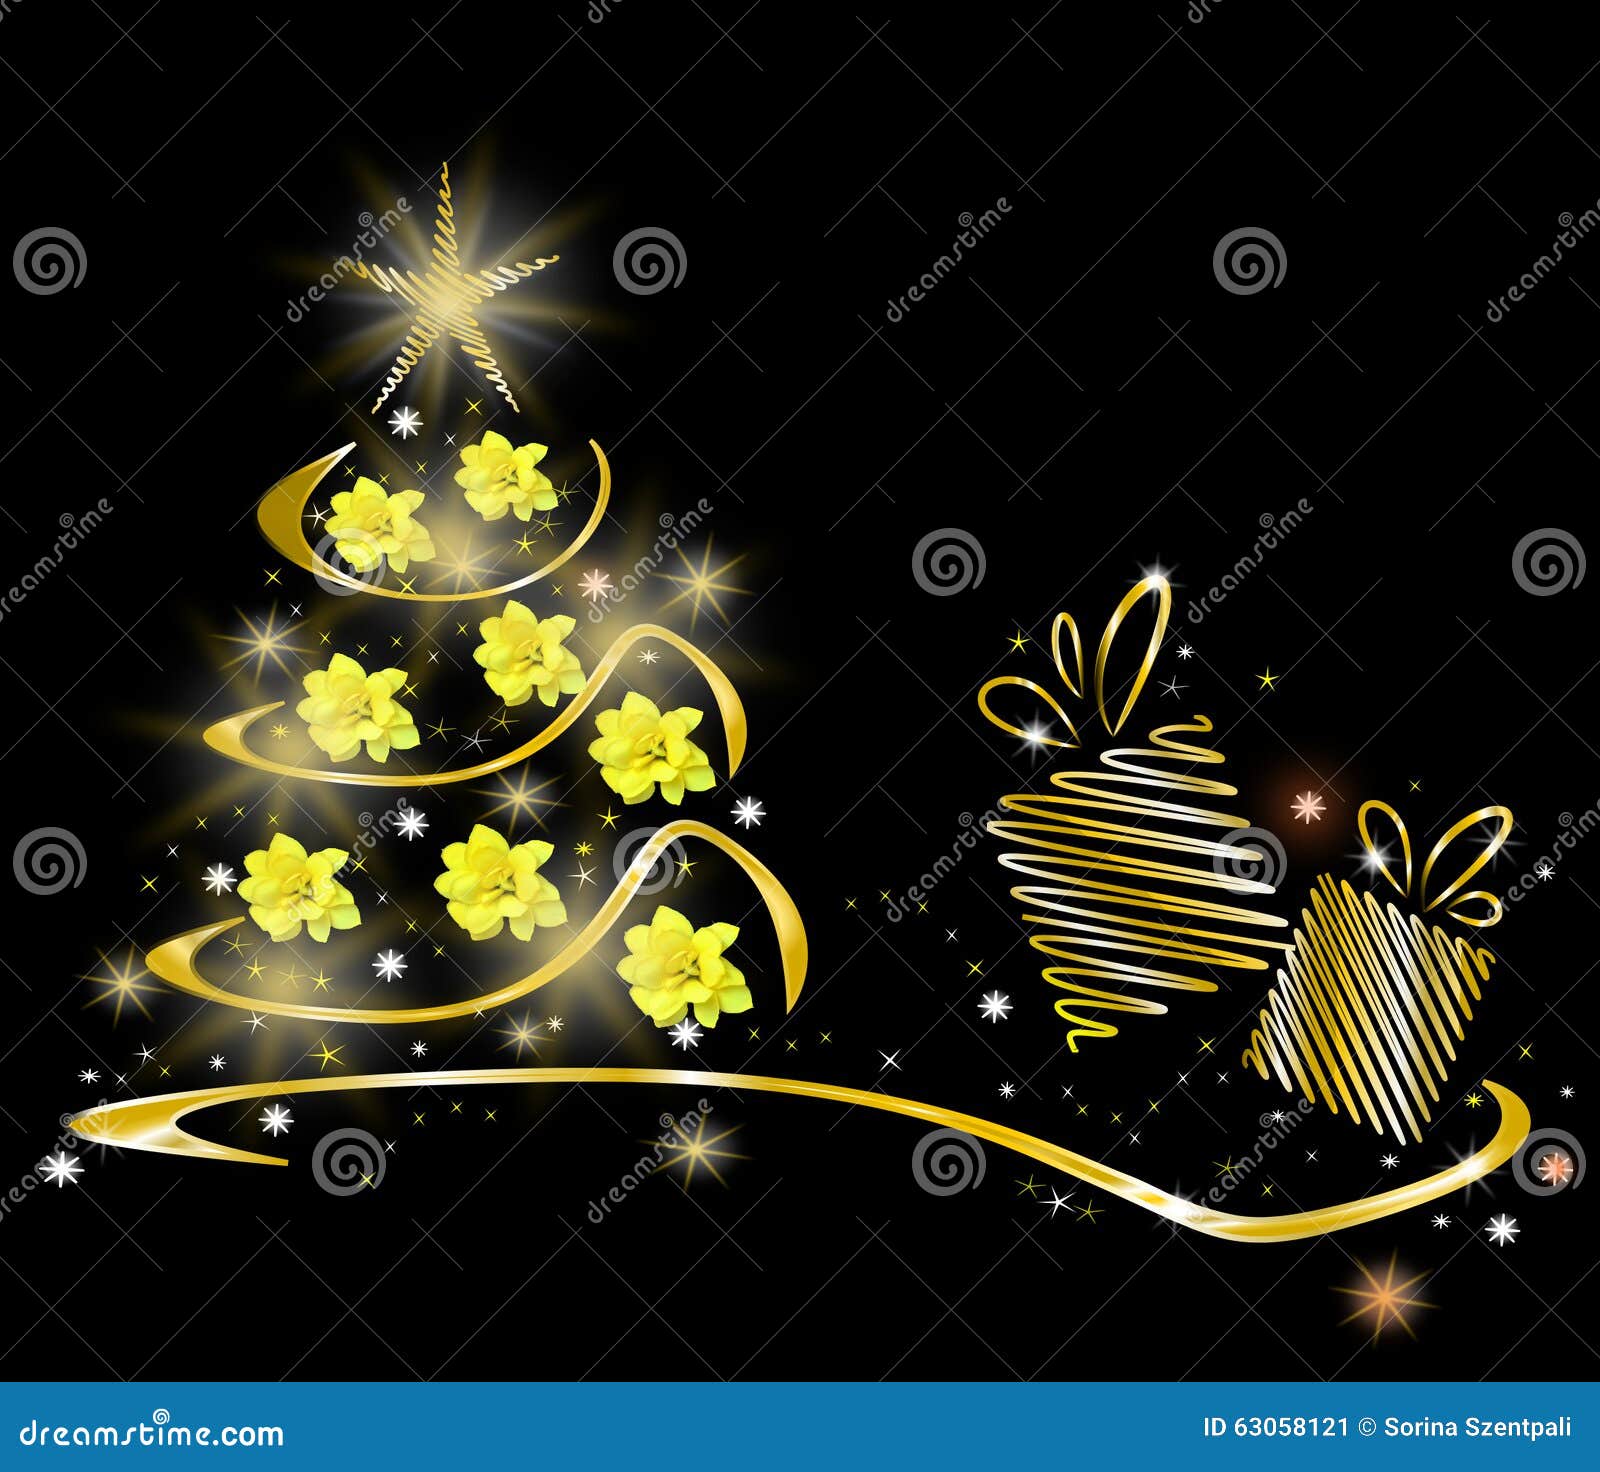 Vector versie in mijn portefeuille. Groene Kerstboom met gloeiende sterren, gele bloemen en huidige doos op zwarte achtergrond